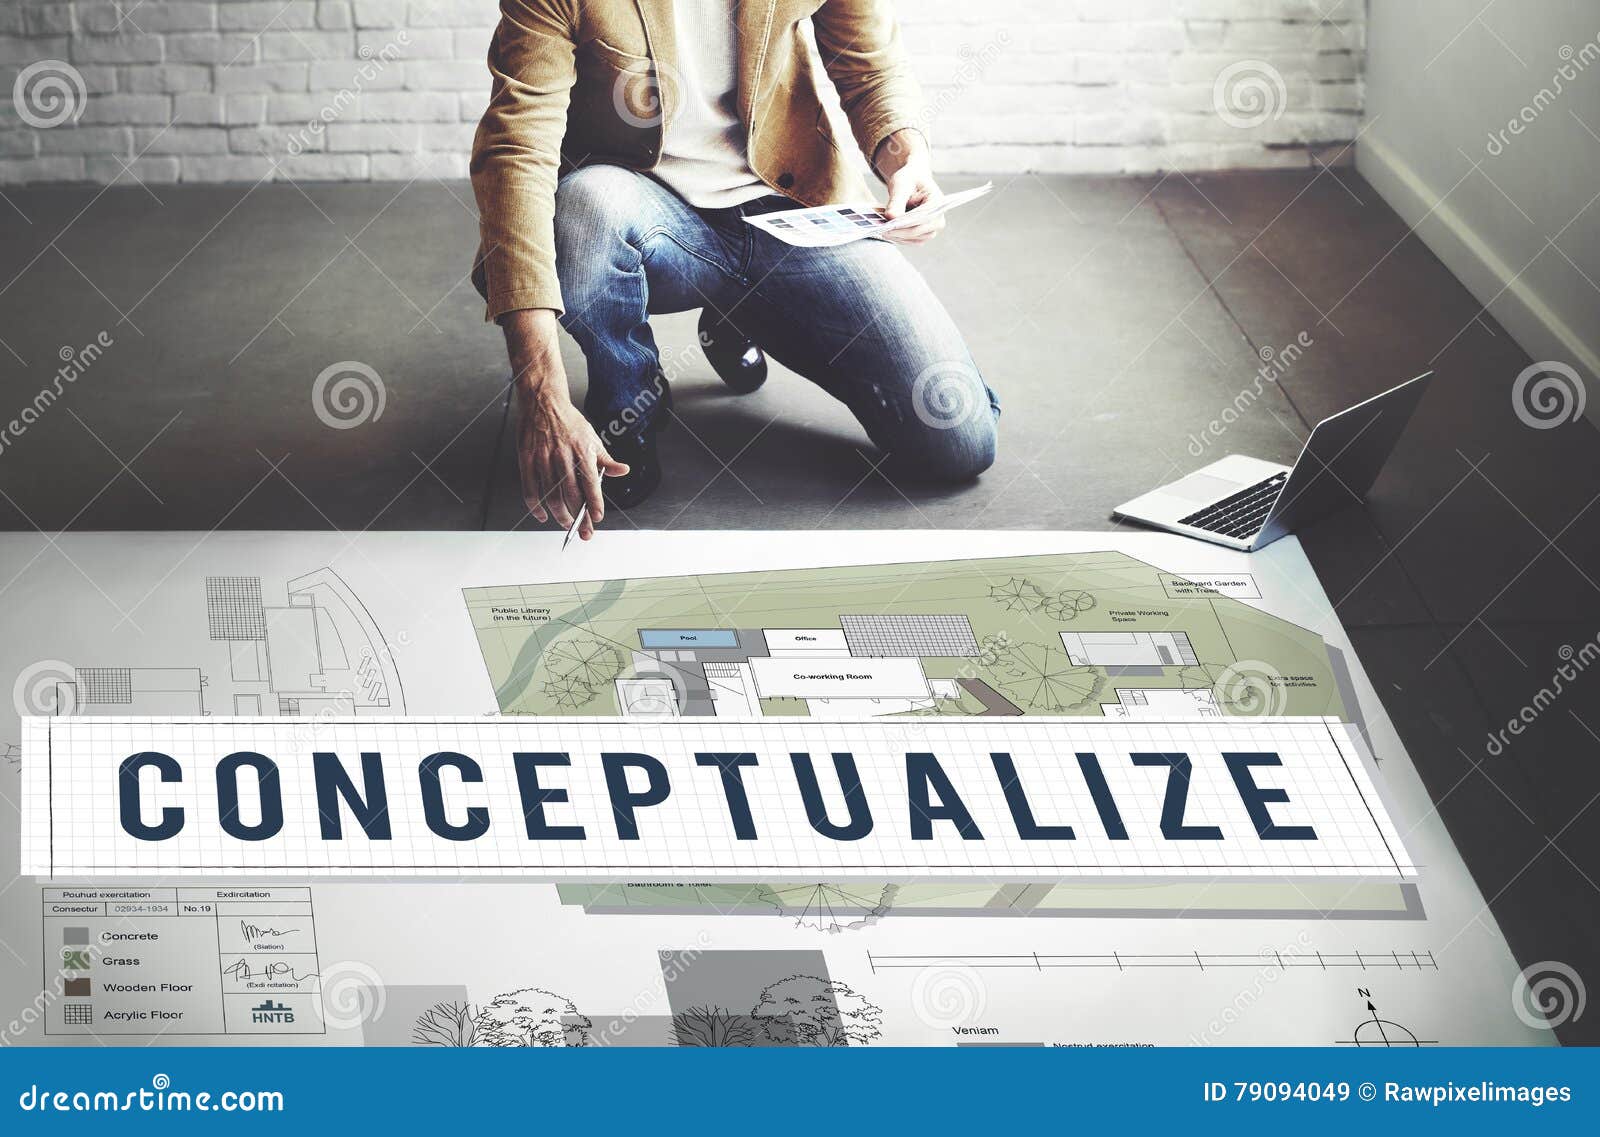 conceptualize ideas creative imagination plan intention concept